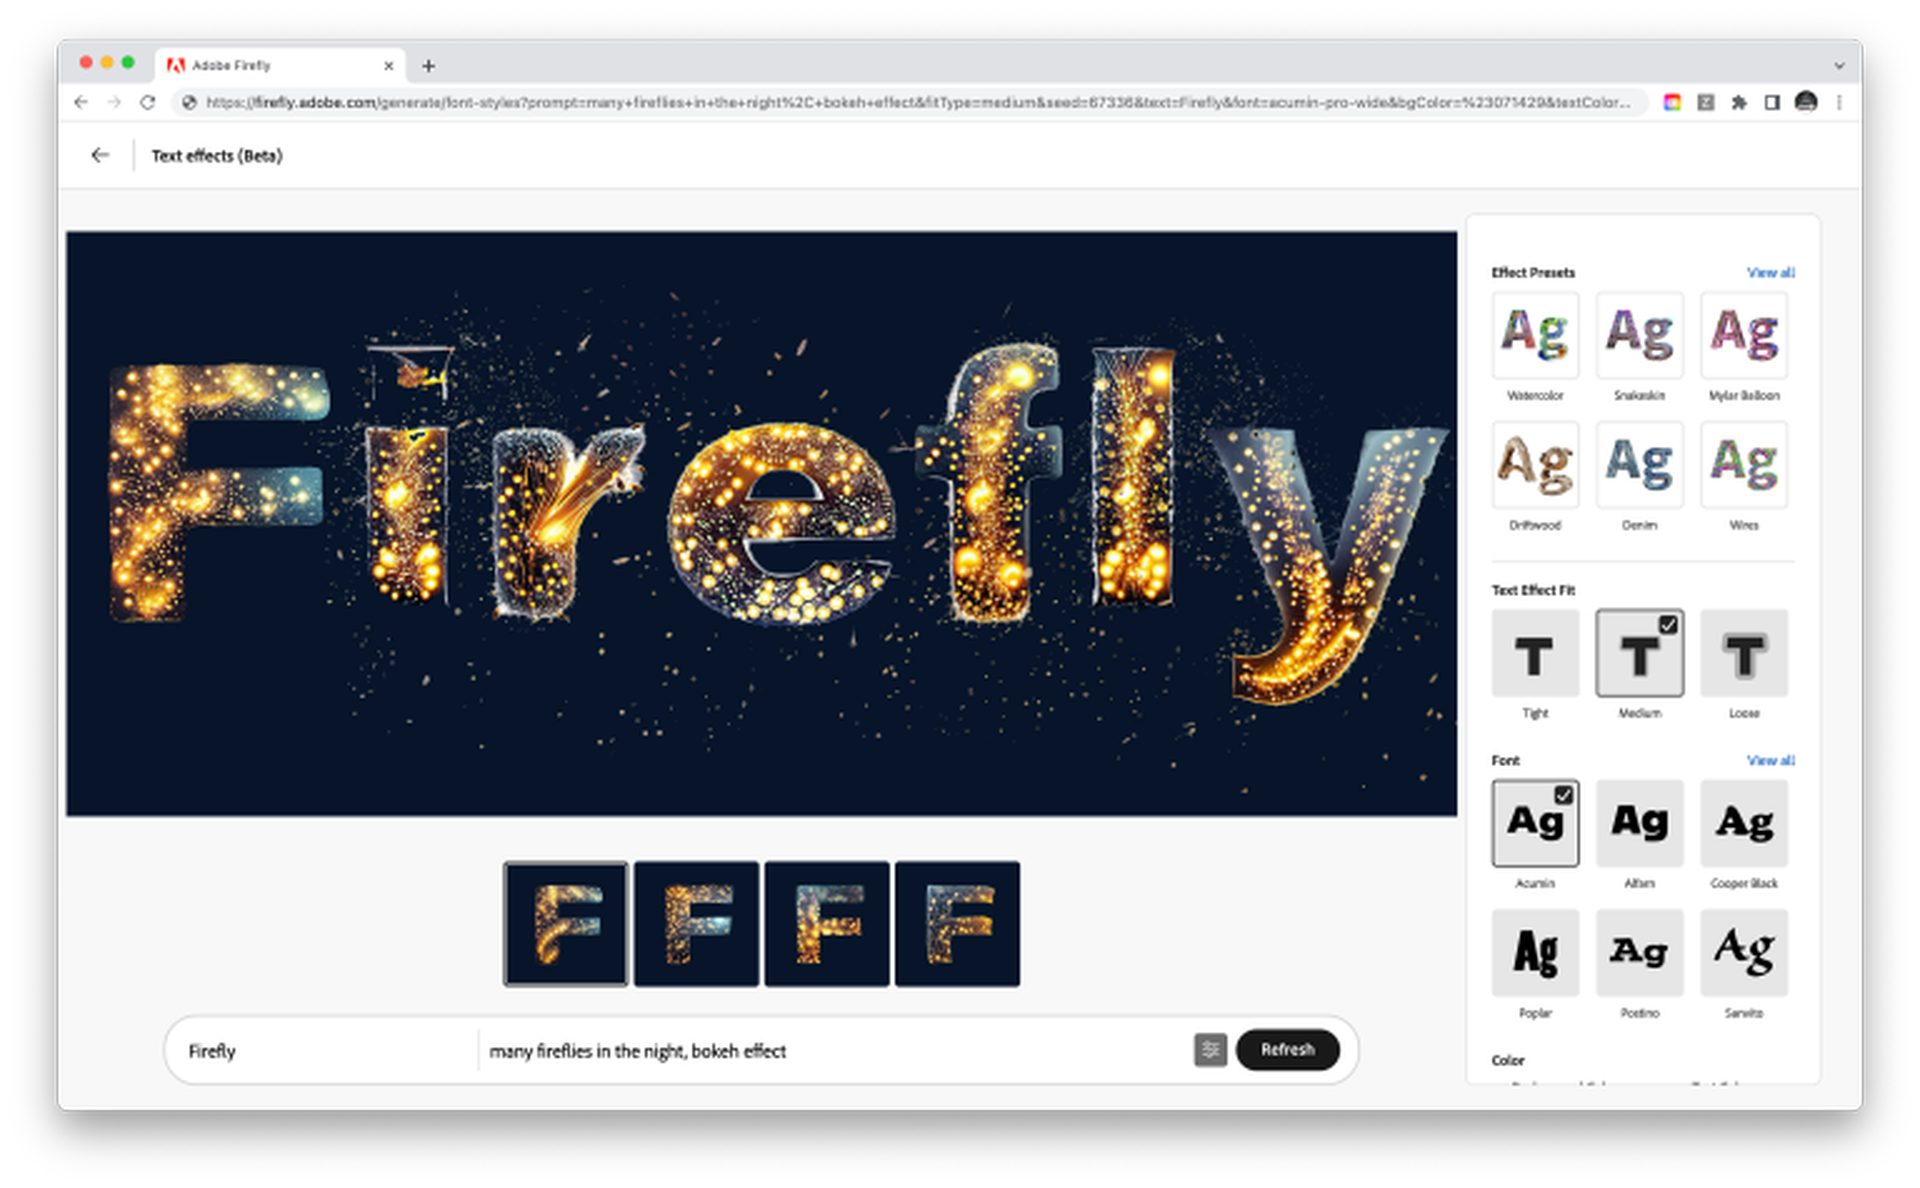 Làm cách nào để sử dụng Adobe Firefly AI với các ví dụ? Tìm hiểu các tính năng của Adobe AI và khai thác hết tiềm năng của AI tổng quát. Tiếp tục đọc và khám phá thêm